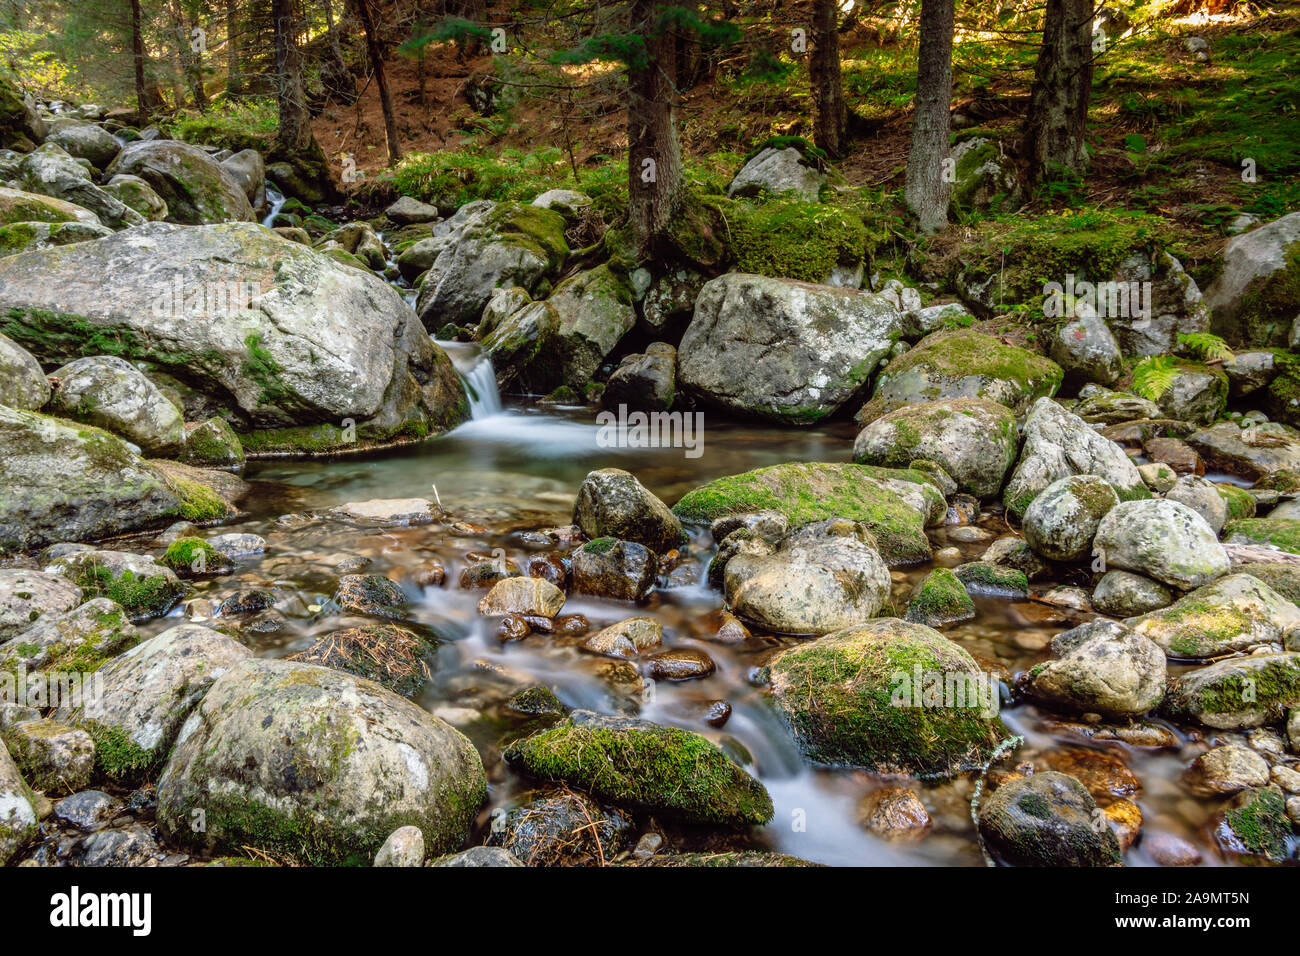 Slow Motion Mountain River. Kleiner Bach in den wilden Wald und Steine mit Moos. Smoky мountain Stream, Rila Gebirge, Bulgarien. Stockfoto